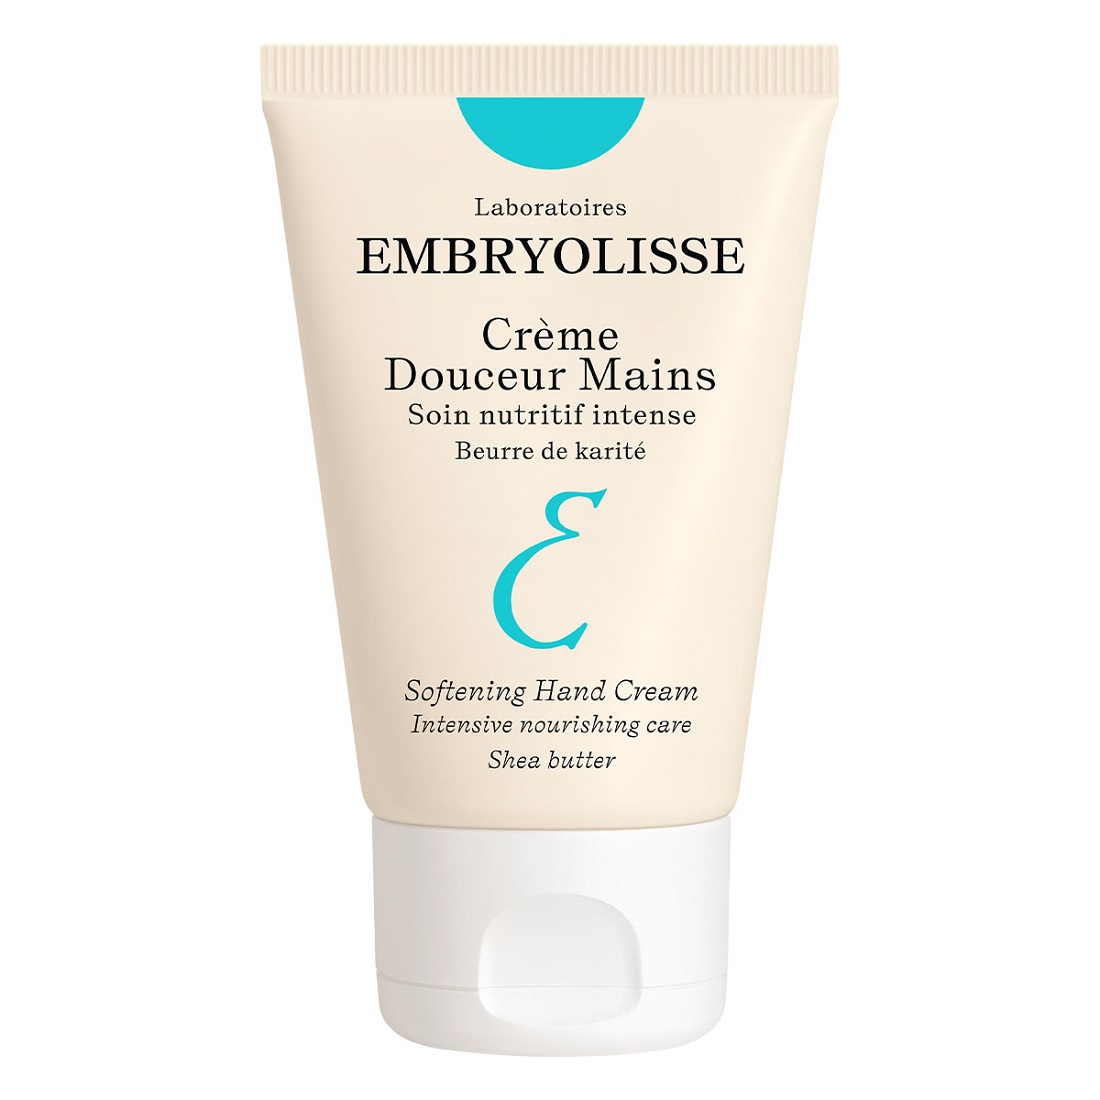 Embryolisse Softnening Hand Cream